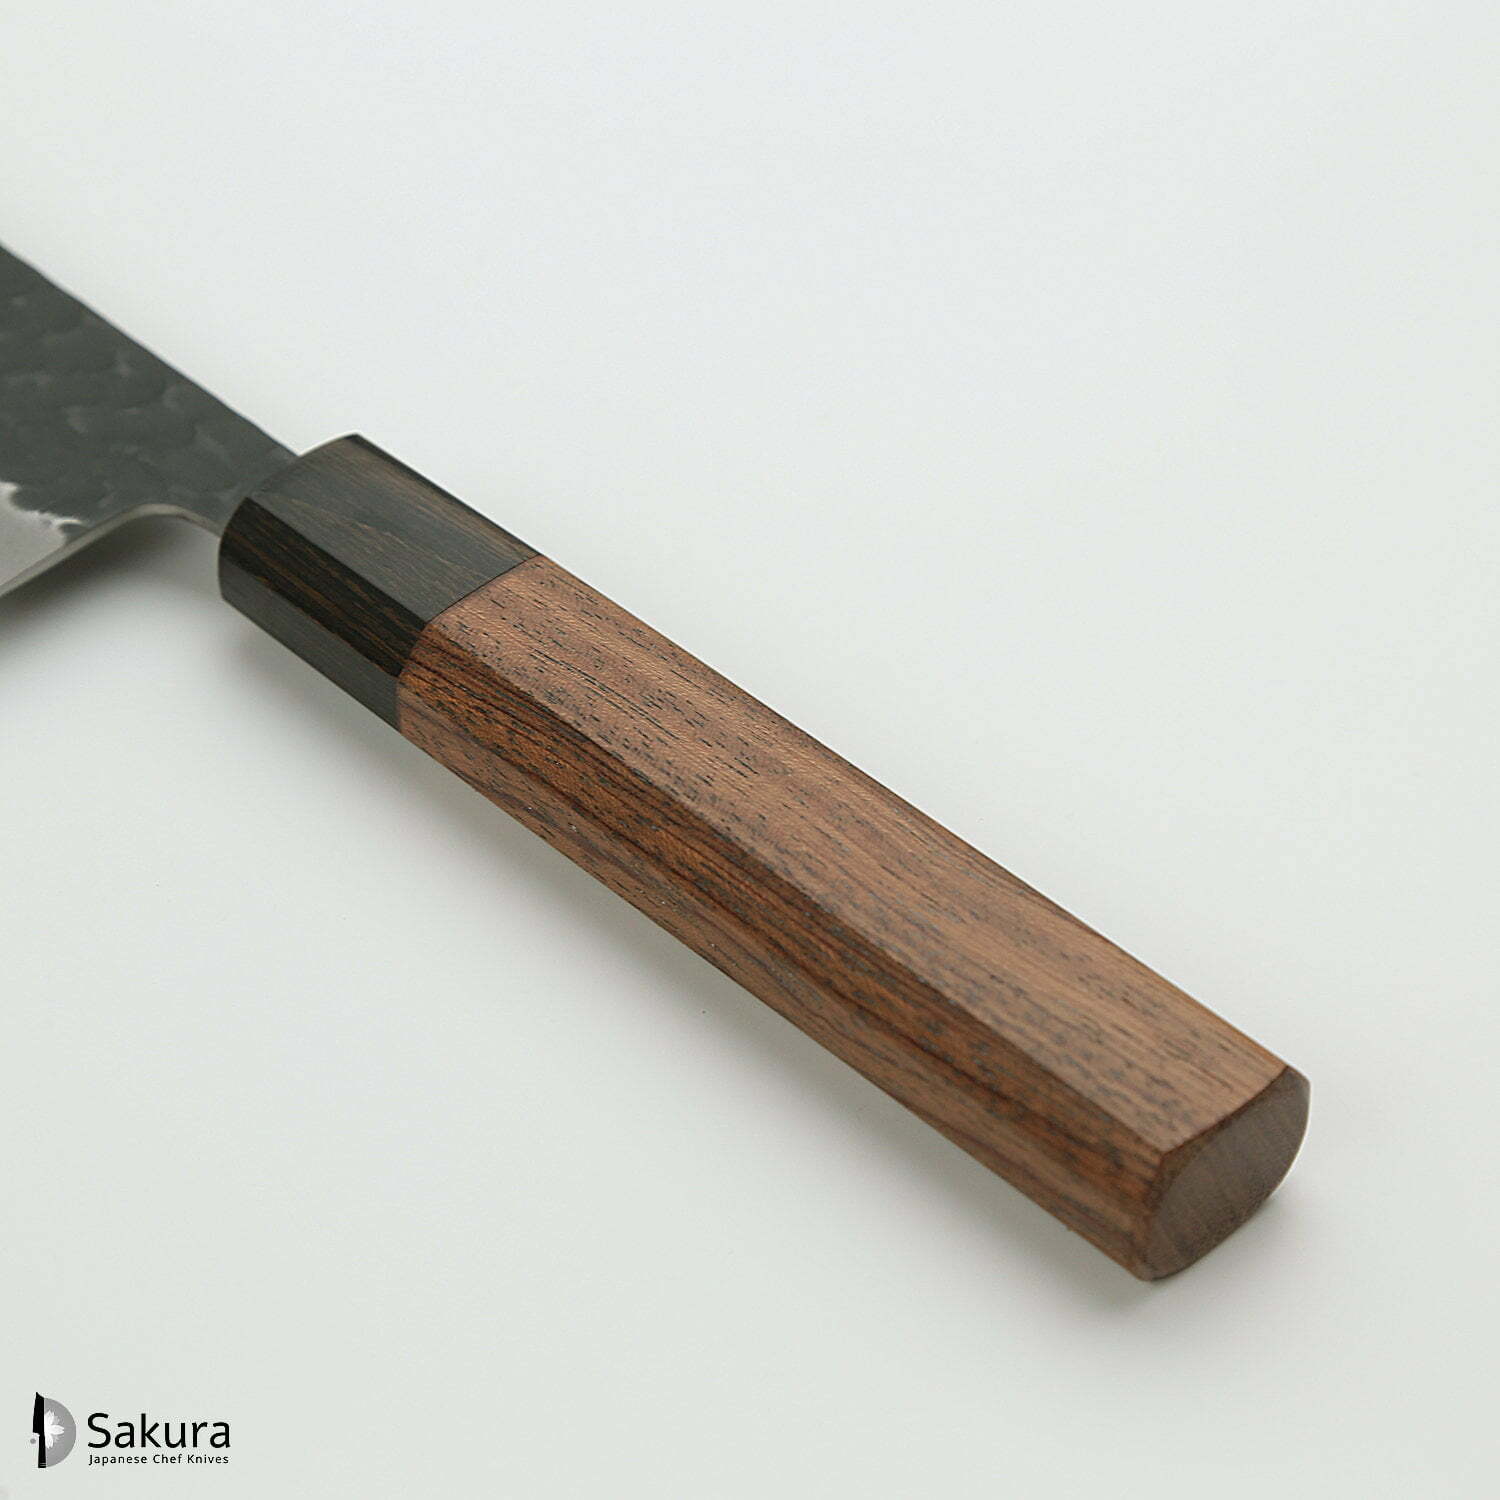 סכין שף רב-תכליתית קִּירִיצוּקֶה גִּיוּטוֹ 200מ״מ מחוזקת 3 שכבות: פלדת פחמן יפנית מתקדמת מסוג Aogami Super עטופה פלדת אל-חלד גימור קורואיצ׳י שחור עם ריקוע פטיש ג׳יקו סאקאיי יפן